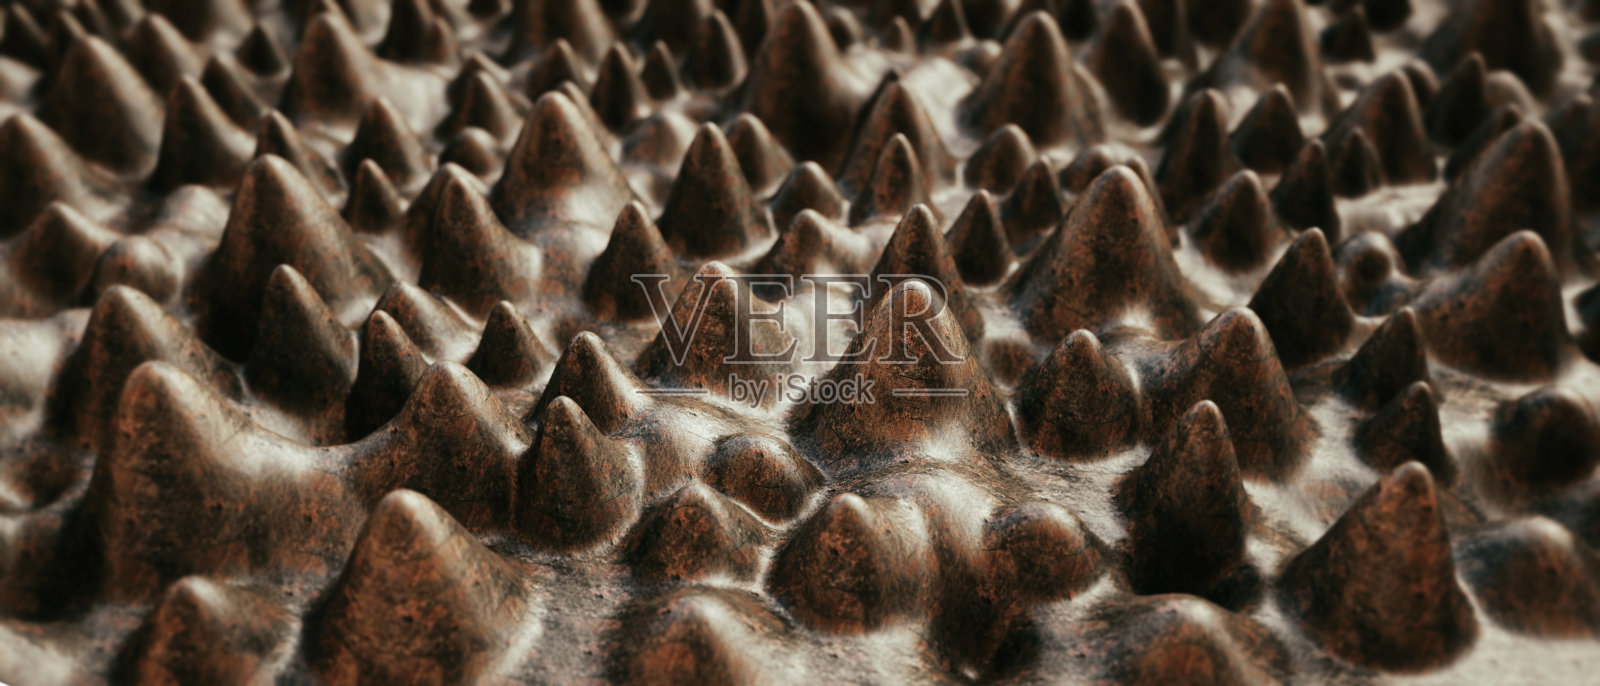 微距摄影特写的人工锥体形状的结构与粗糙的棕色生锈的表面照片摄影图片